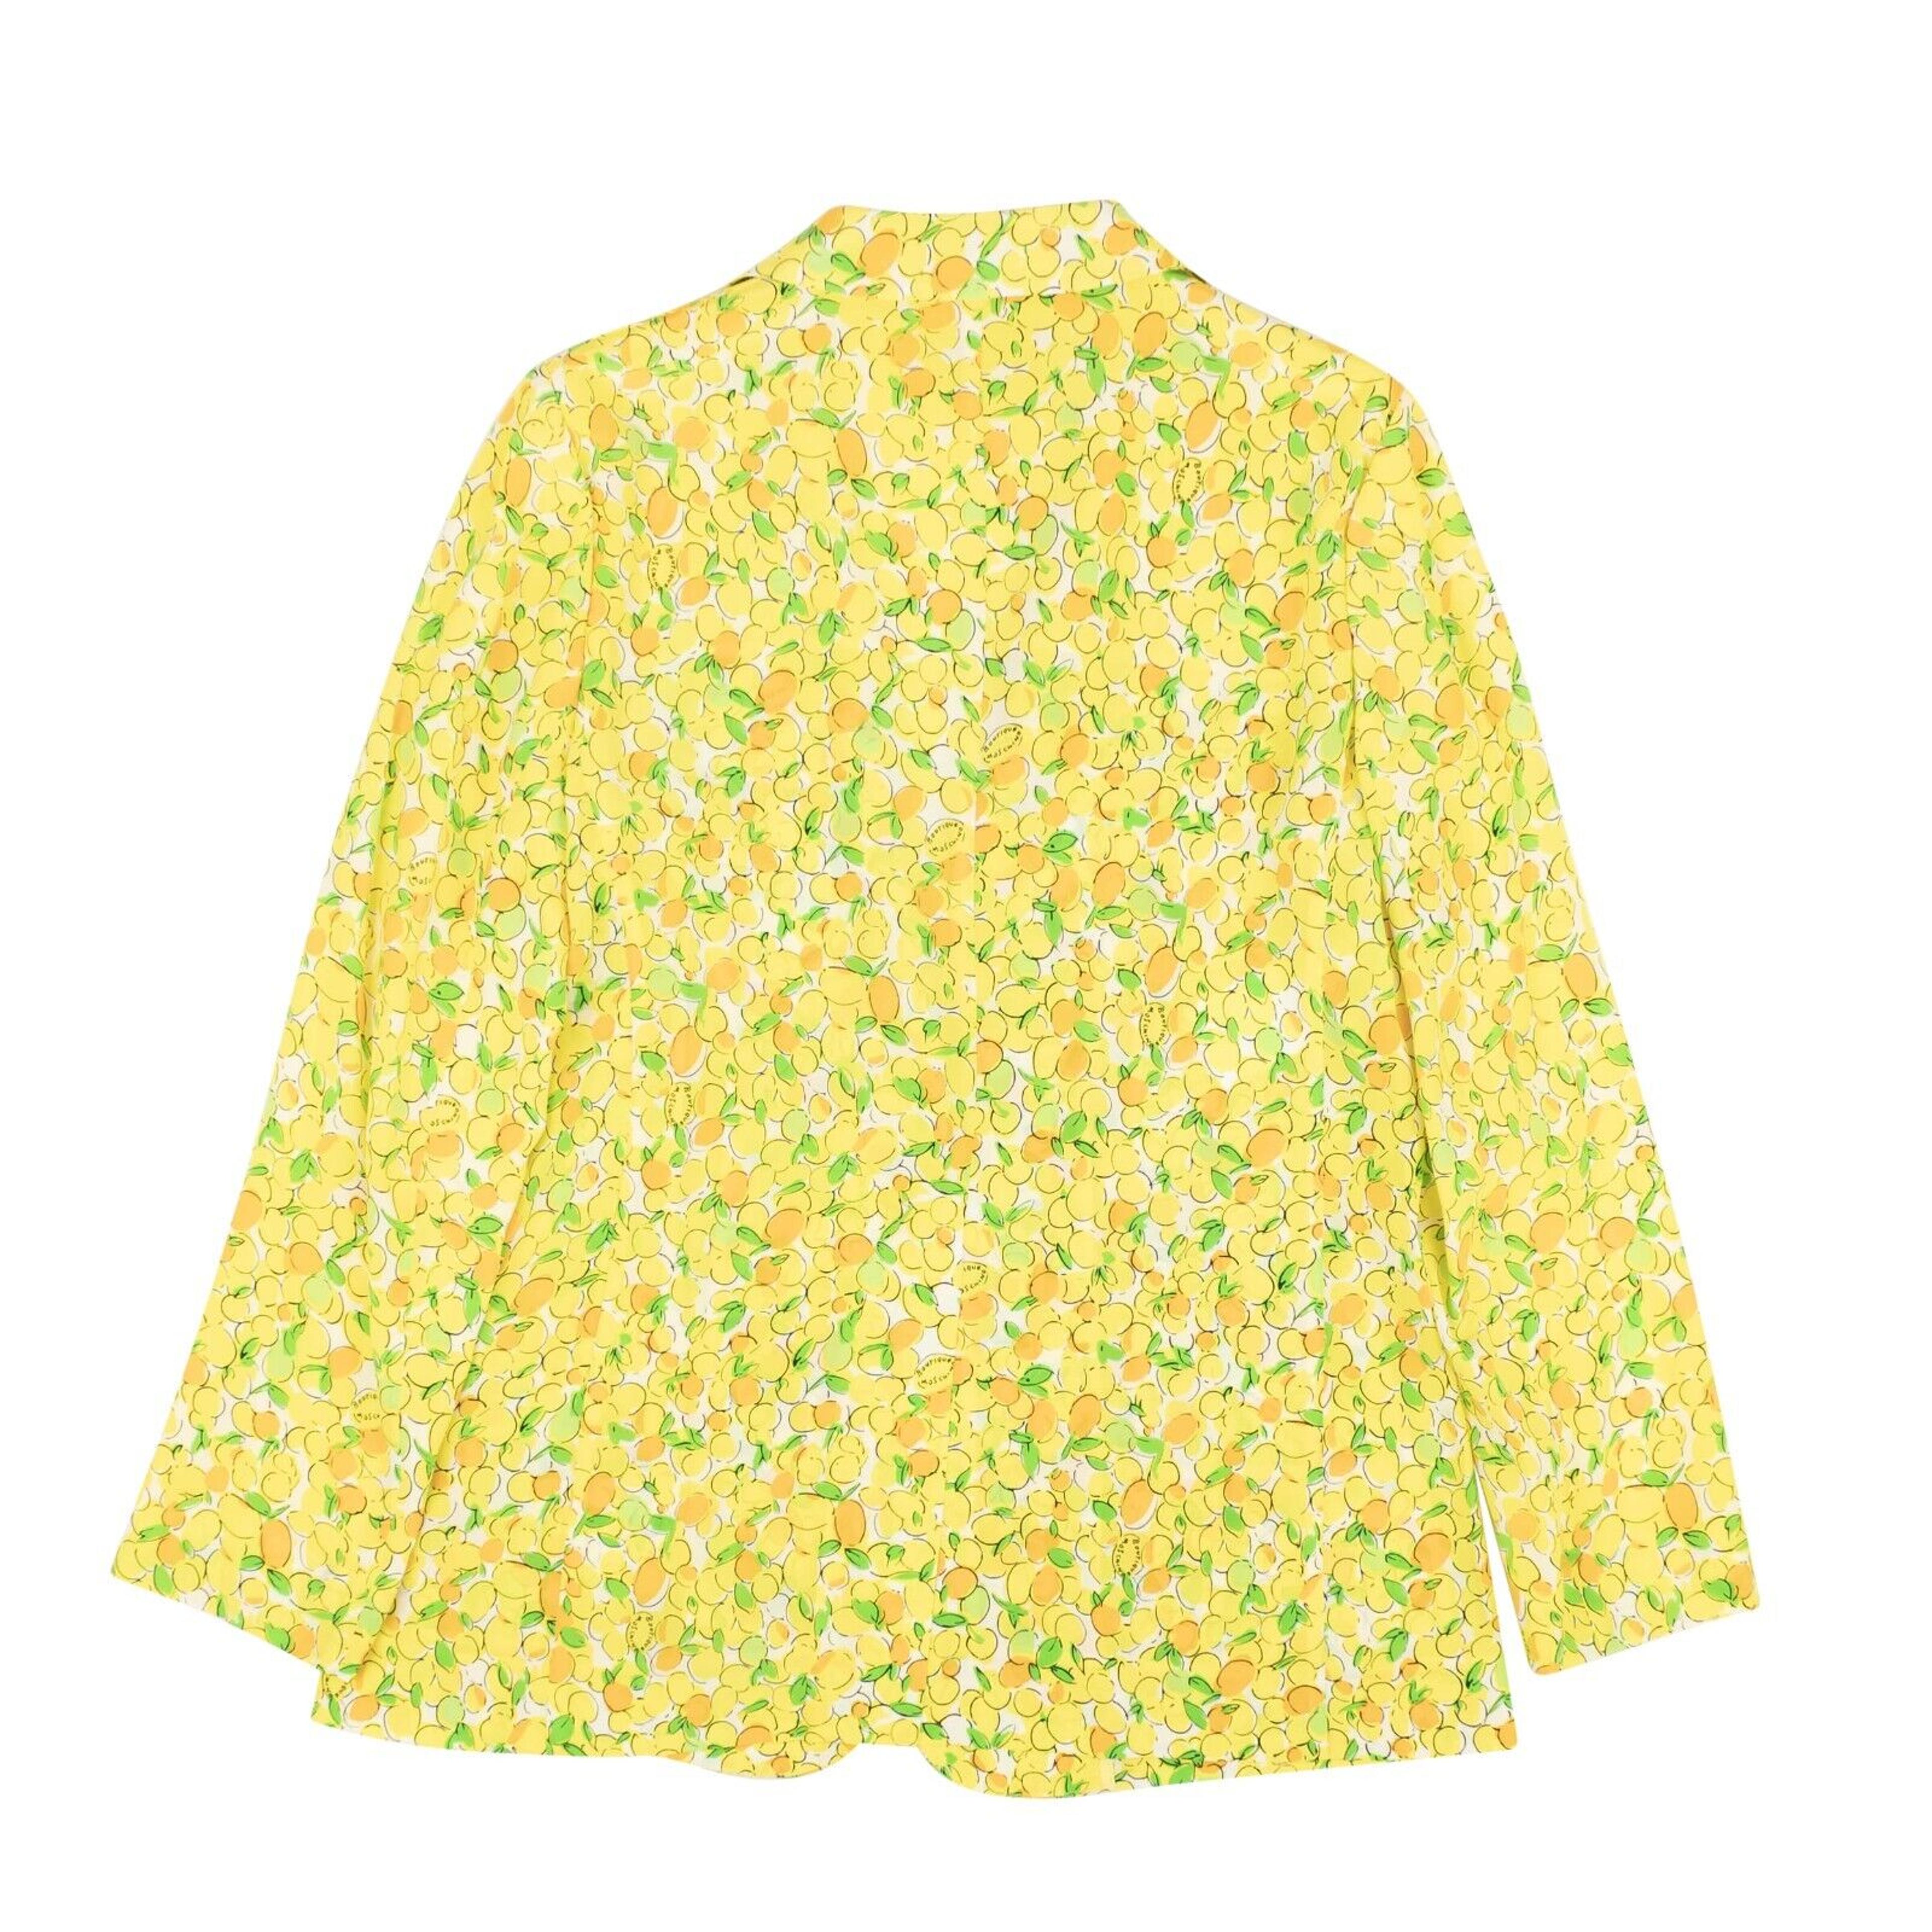 Alternate View 2 of NWT BOUTIQUE MOSCHINO Yellow Lemon Print Silk Blazer Jacket